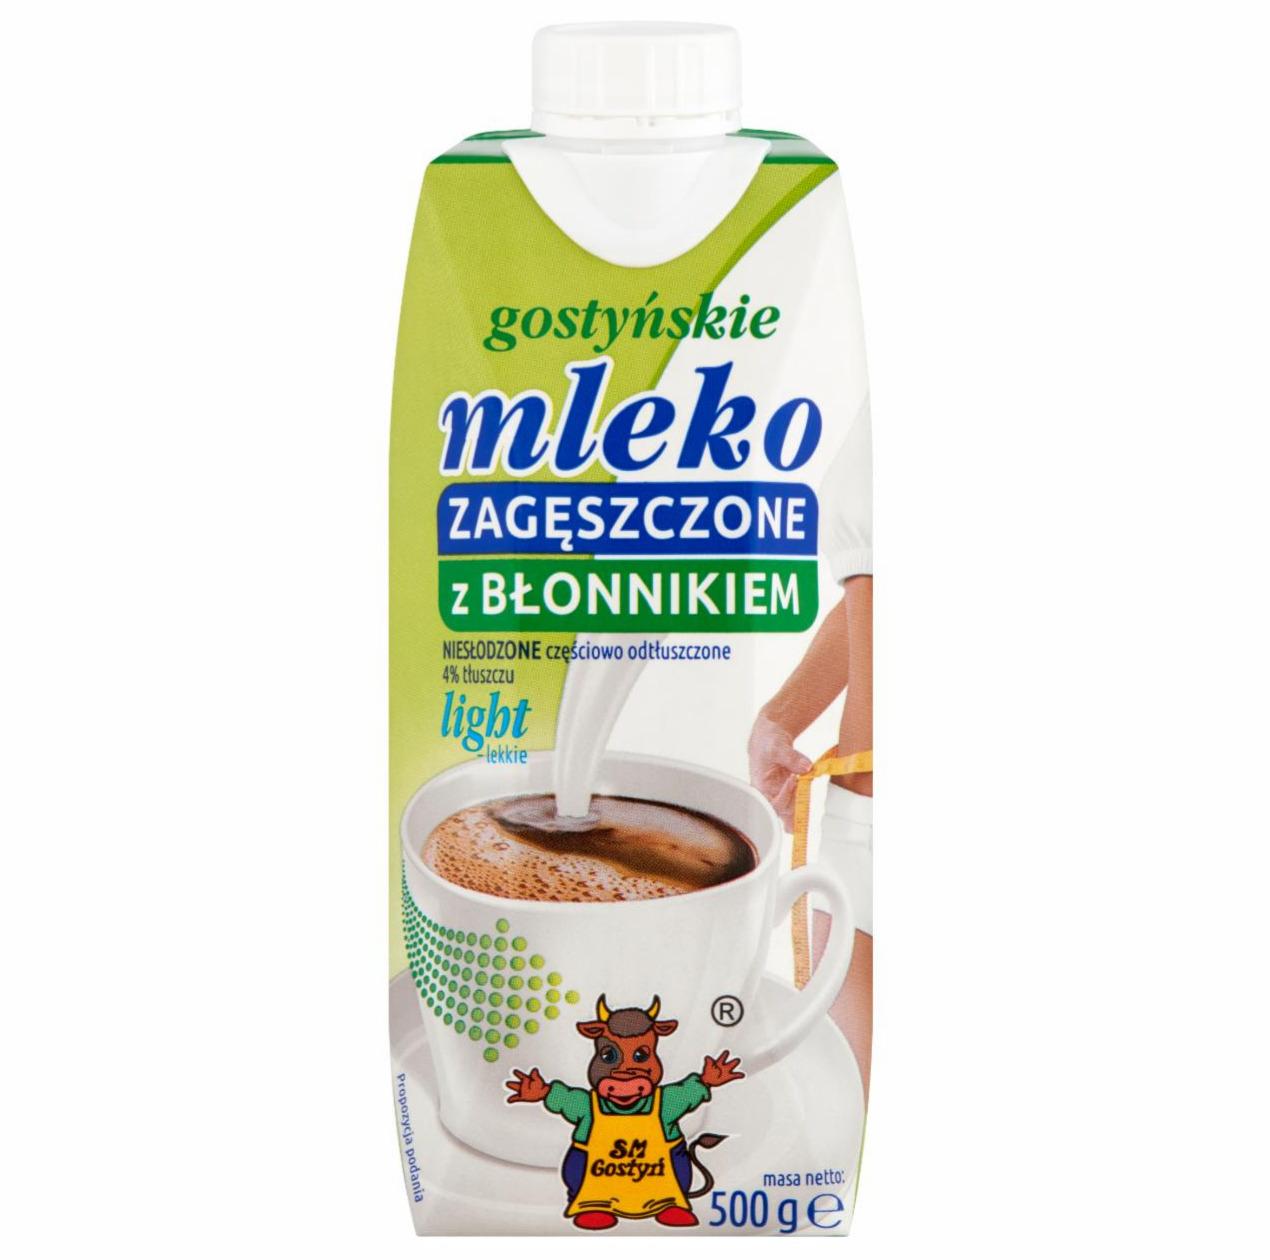 Zdjęcia - SM Gostyń Gostyńskie mleko zagęszczone z błonnikiem light 500 g